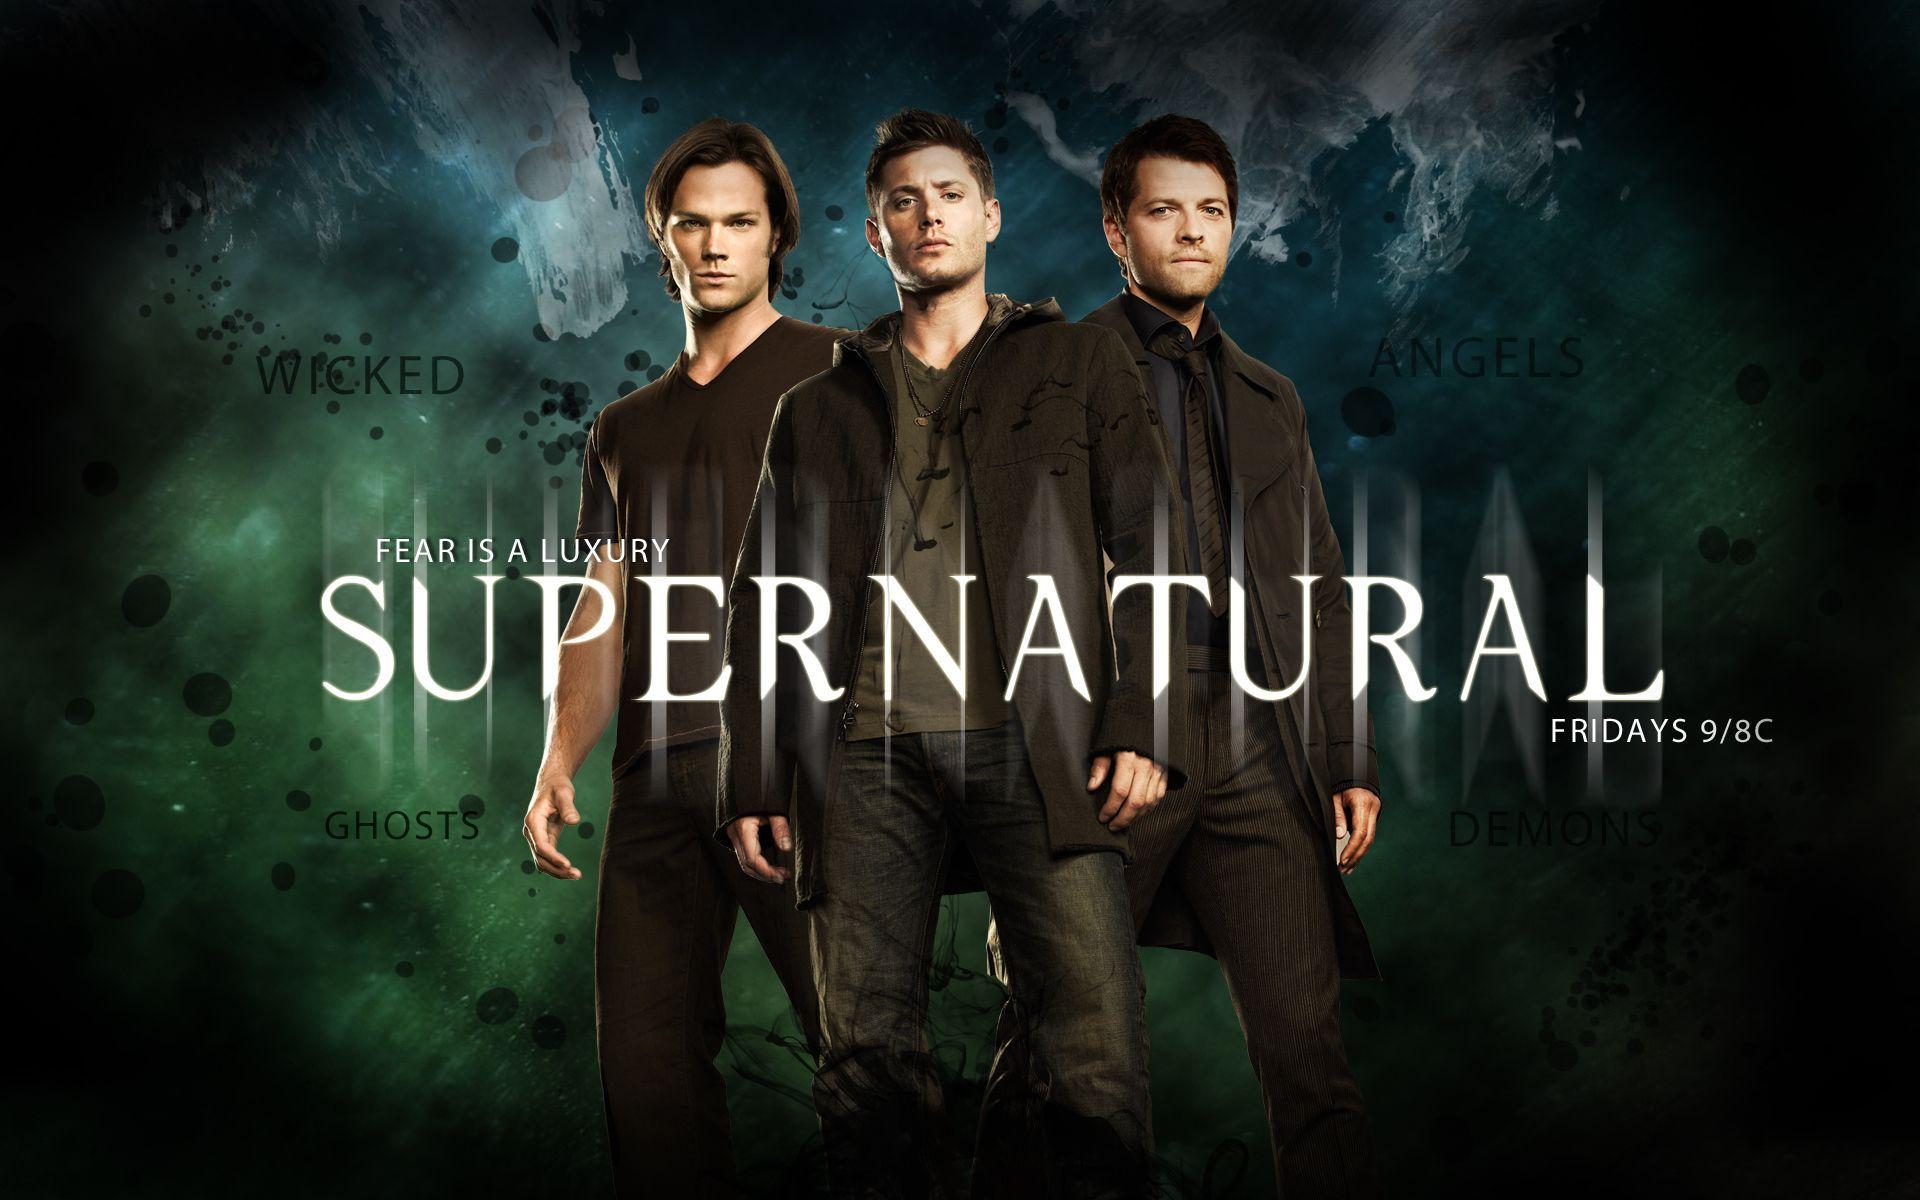 Supernatural Wallpaper 2016. Supernatural wallpaper, Supernatural seasons, Supernatural season 10